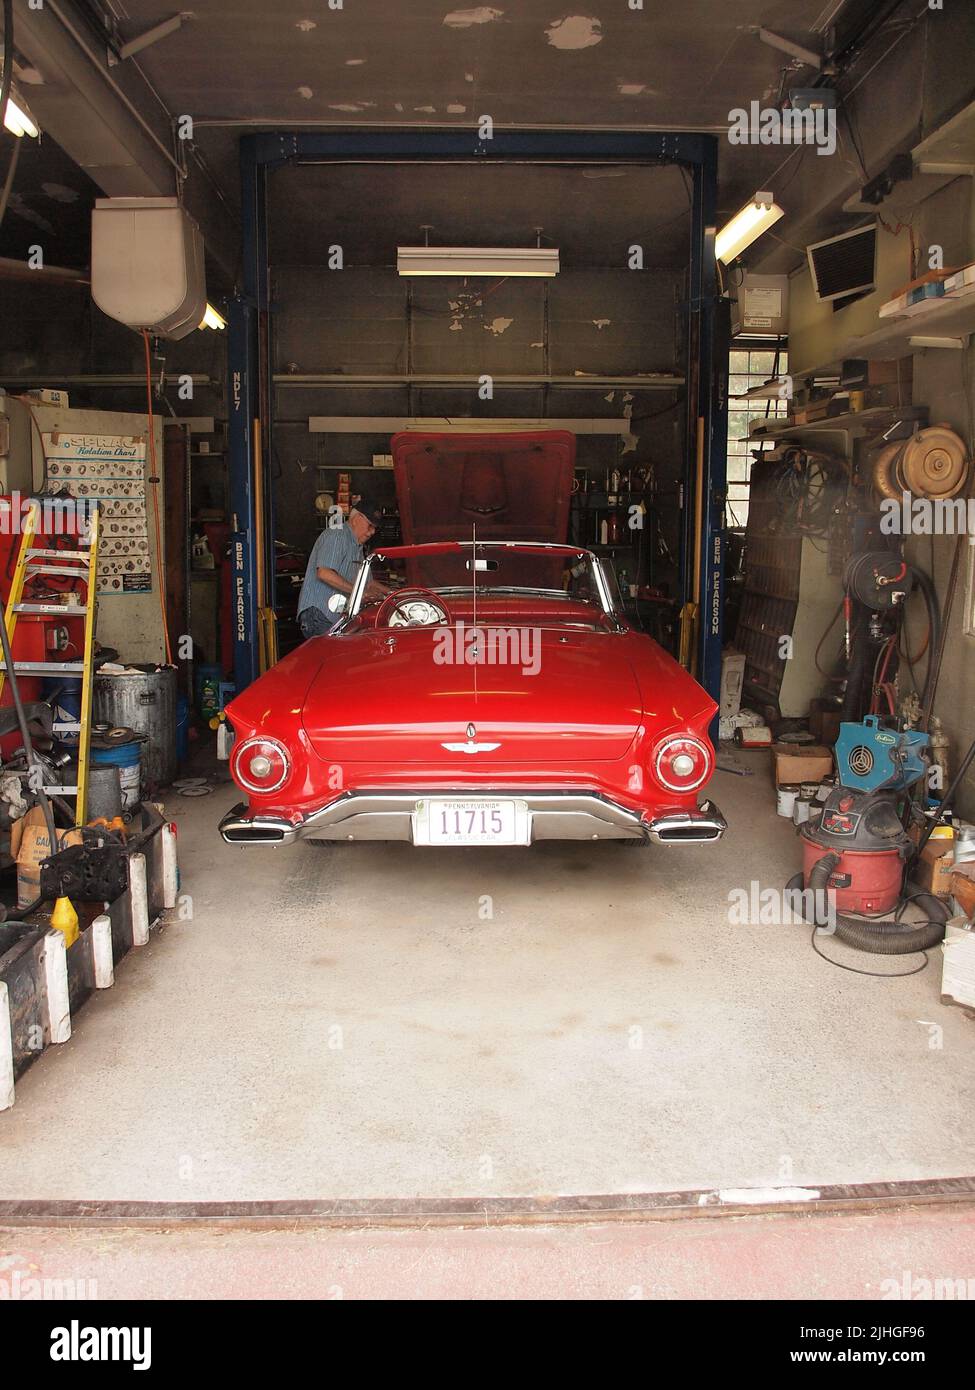 Un classique rouge 1957 Ford Thunderbird vu dans une station de service ancienne de Pennsylvanie locale. Le propriétaire peut être vu travailler sur la voiture. Banque D'Images